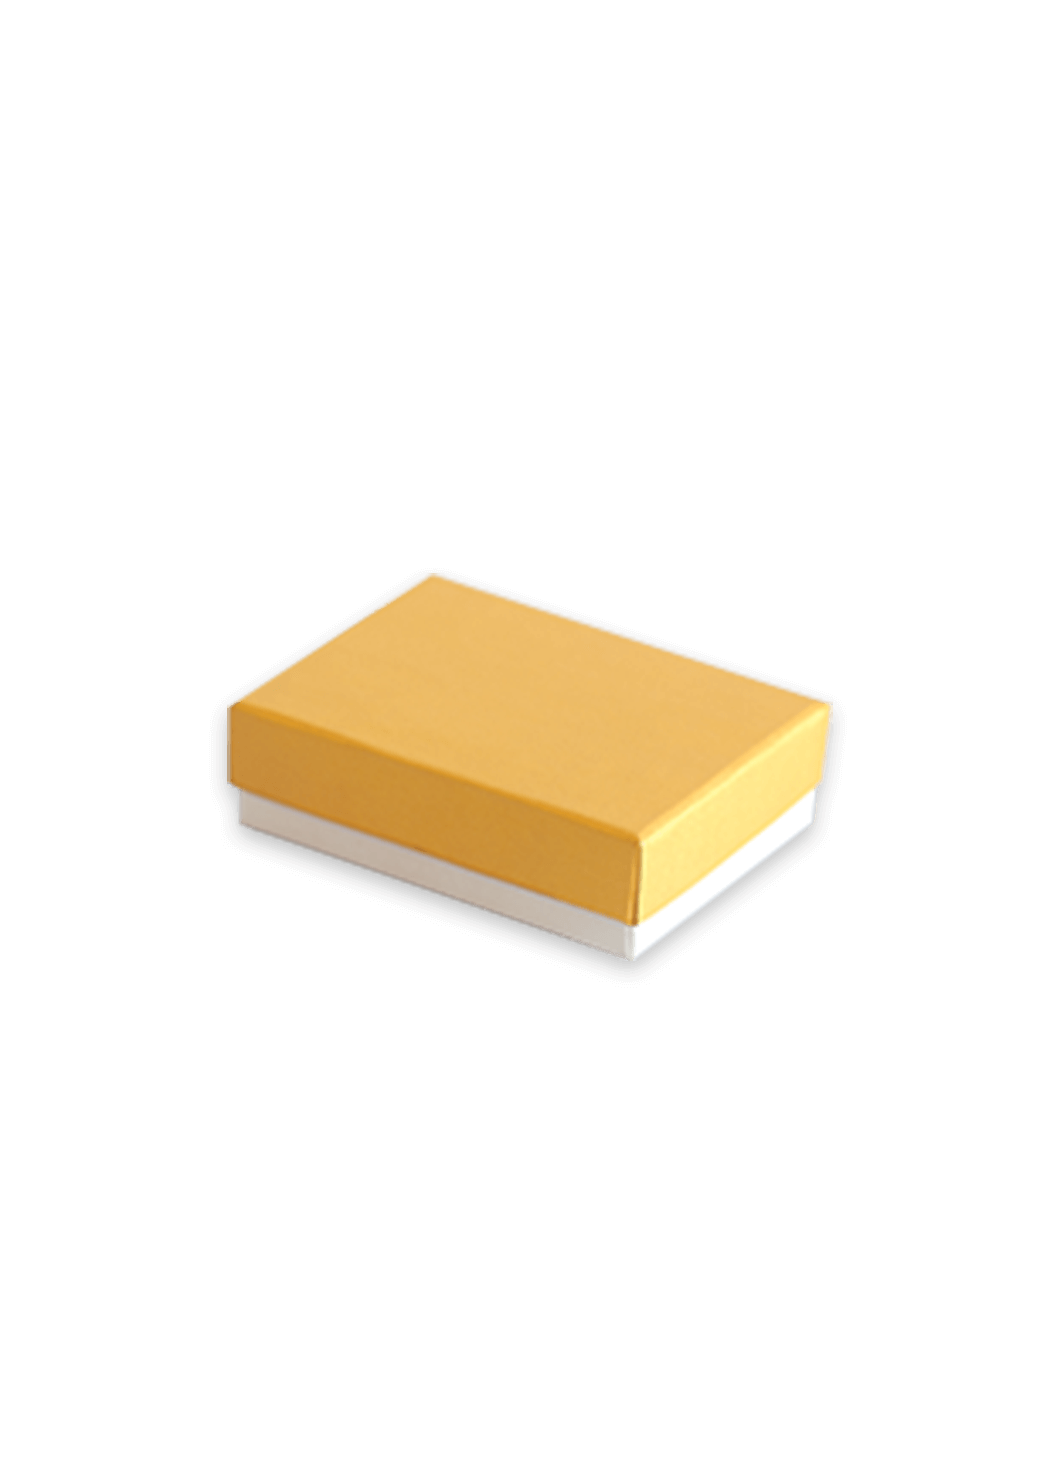 Plain Golden Design Box for Packing